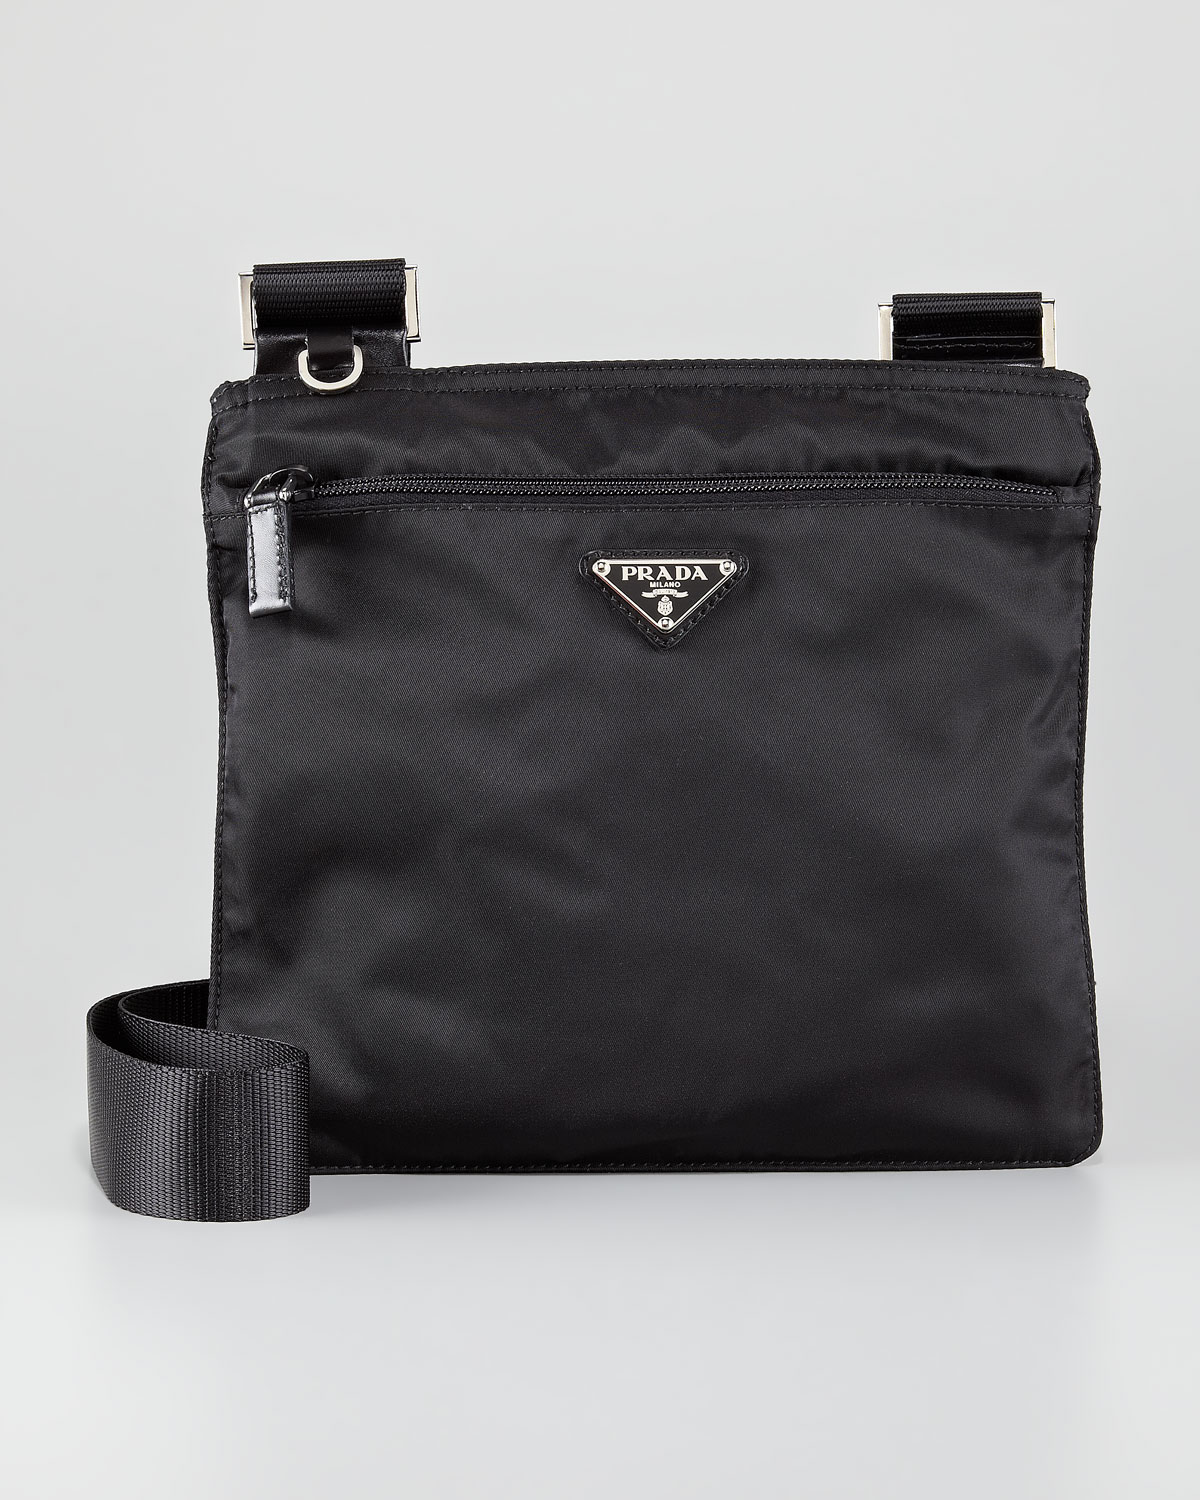 Prada Vela Crossbody Messenger Bag in Black (nero) | Lyst  